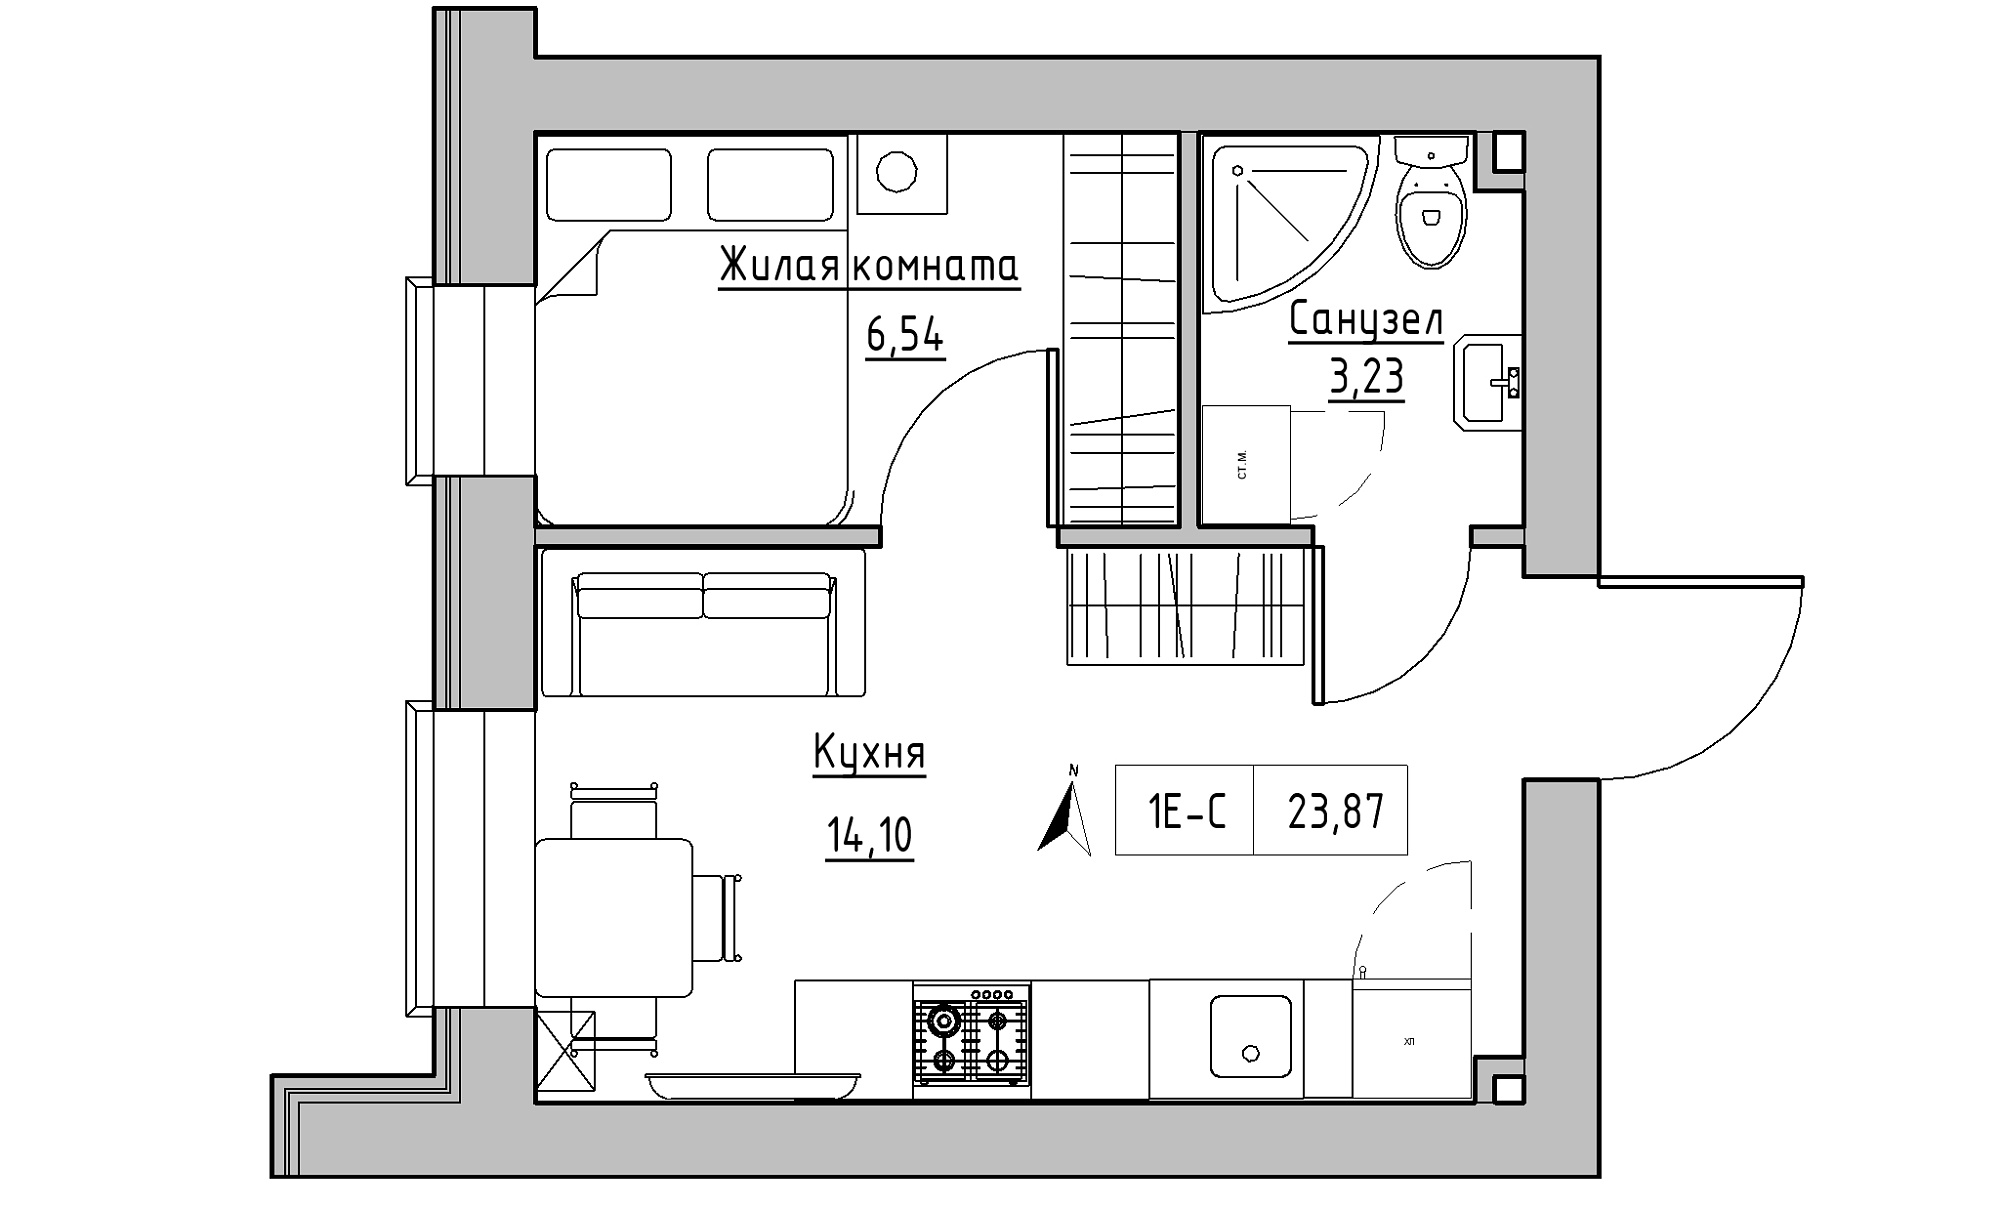 Планування 1-к квартира площею 23.87м2, KS-016-03/0012.